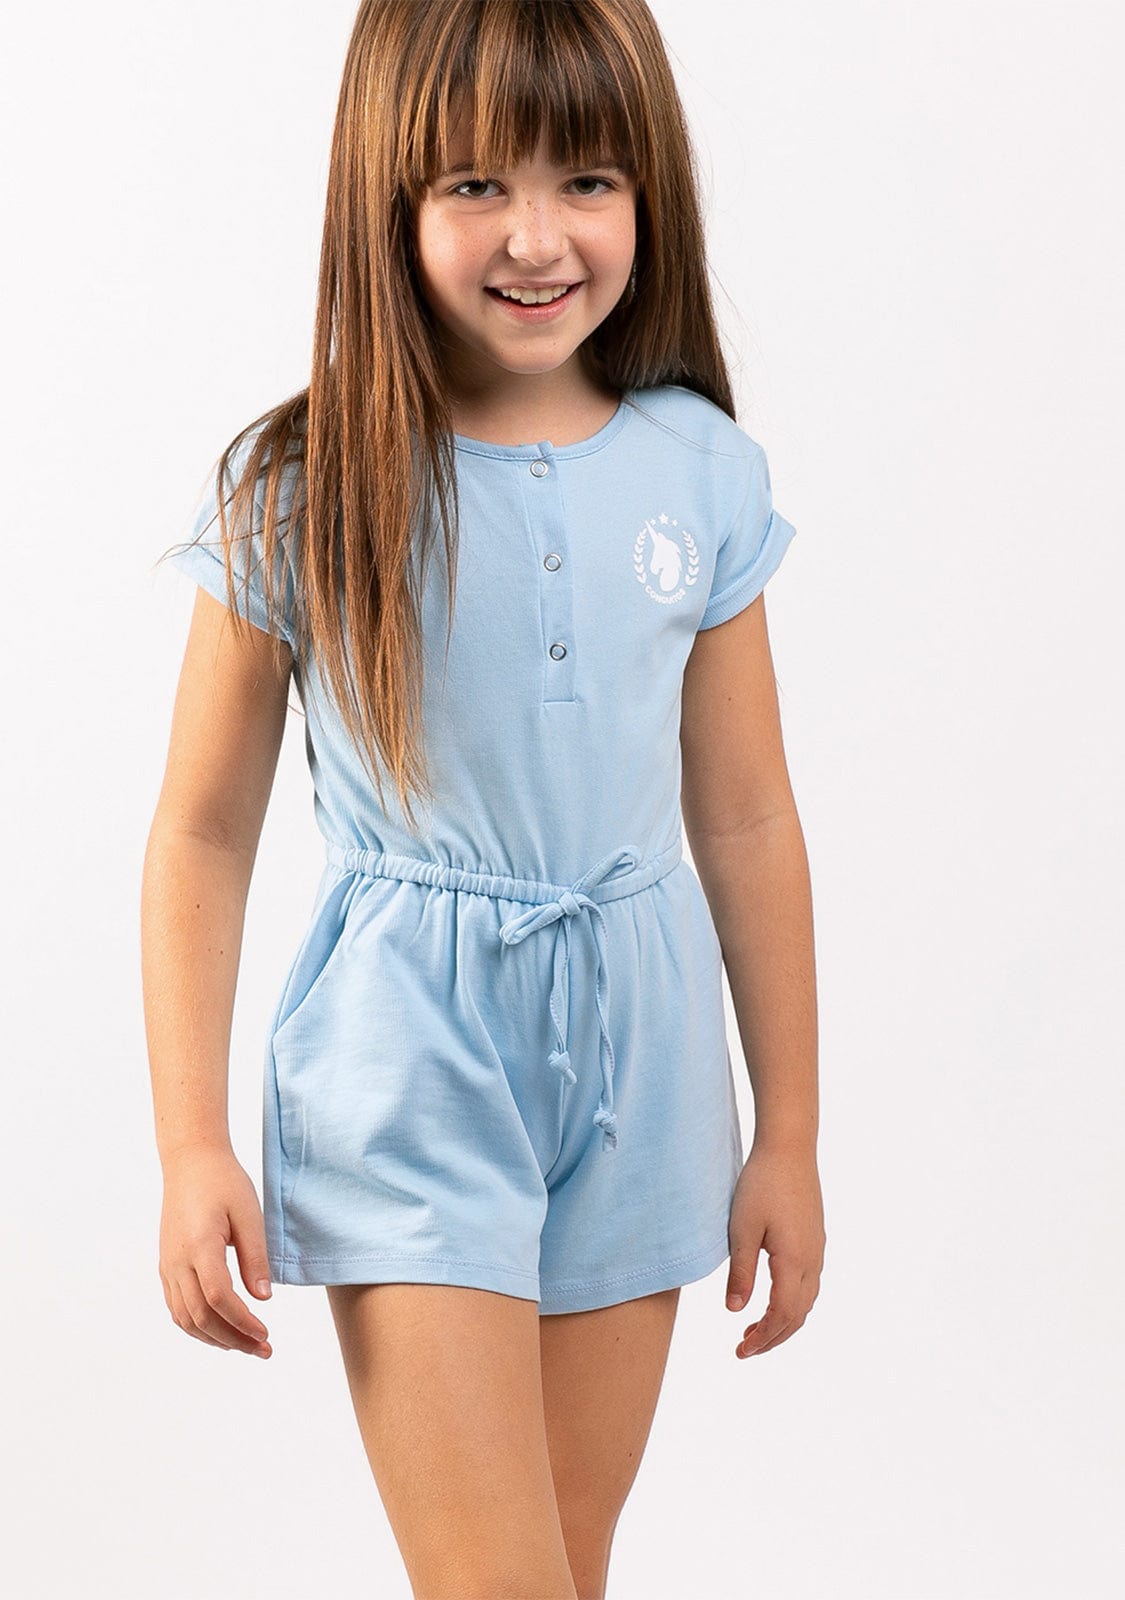 CONGUITOS TEXTIL Clothing Girl's Bluish Plush Plain Jumpsuit